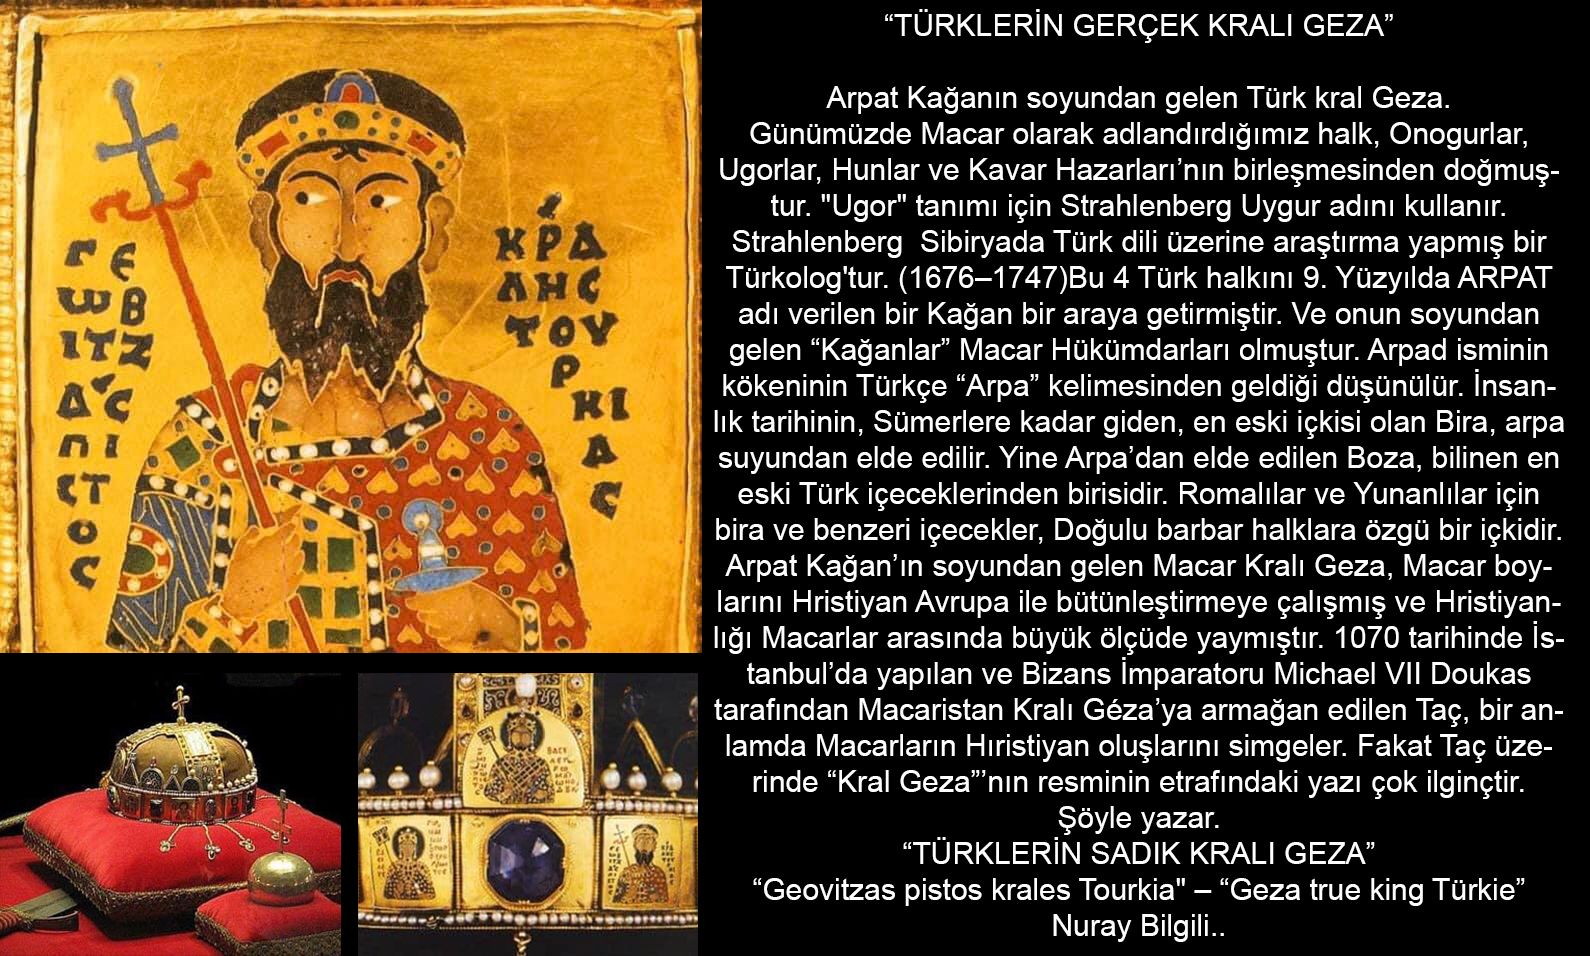 Bizans İmparatoru Dukas tarafından, Türk başbuğ Macar Kralı Arpad'ın torunu Geza'ya verilen Taç